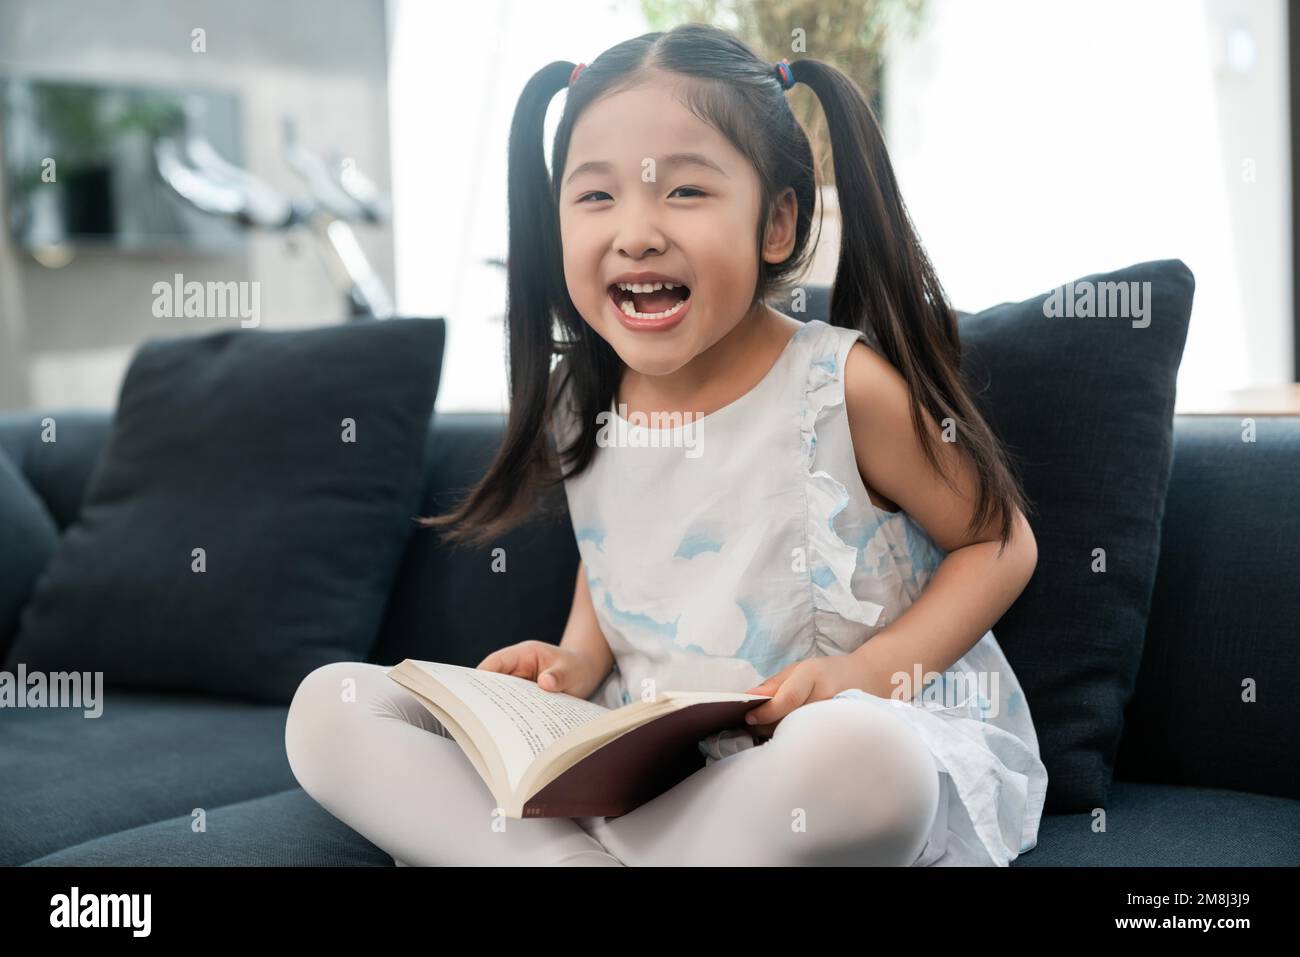 Das kleine Mädchen auf dem Sofa, das ein Buch liest Stockfoto